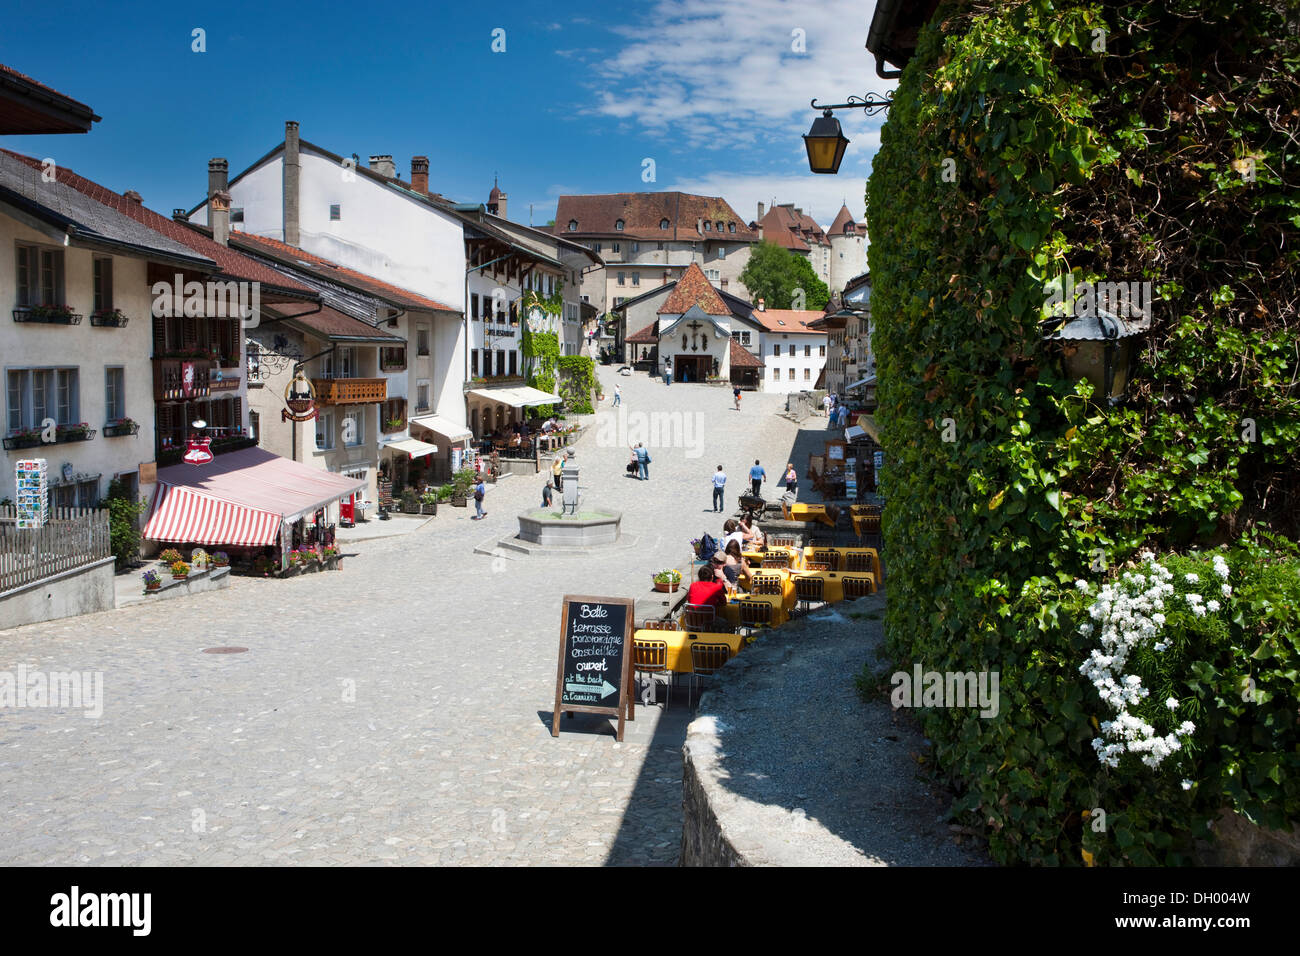 Rue principale dans le village médiéval de Gruyères, Fribourg, Suisse, Europe Banque D'Images